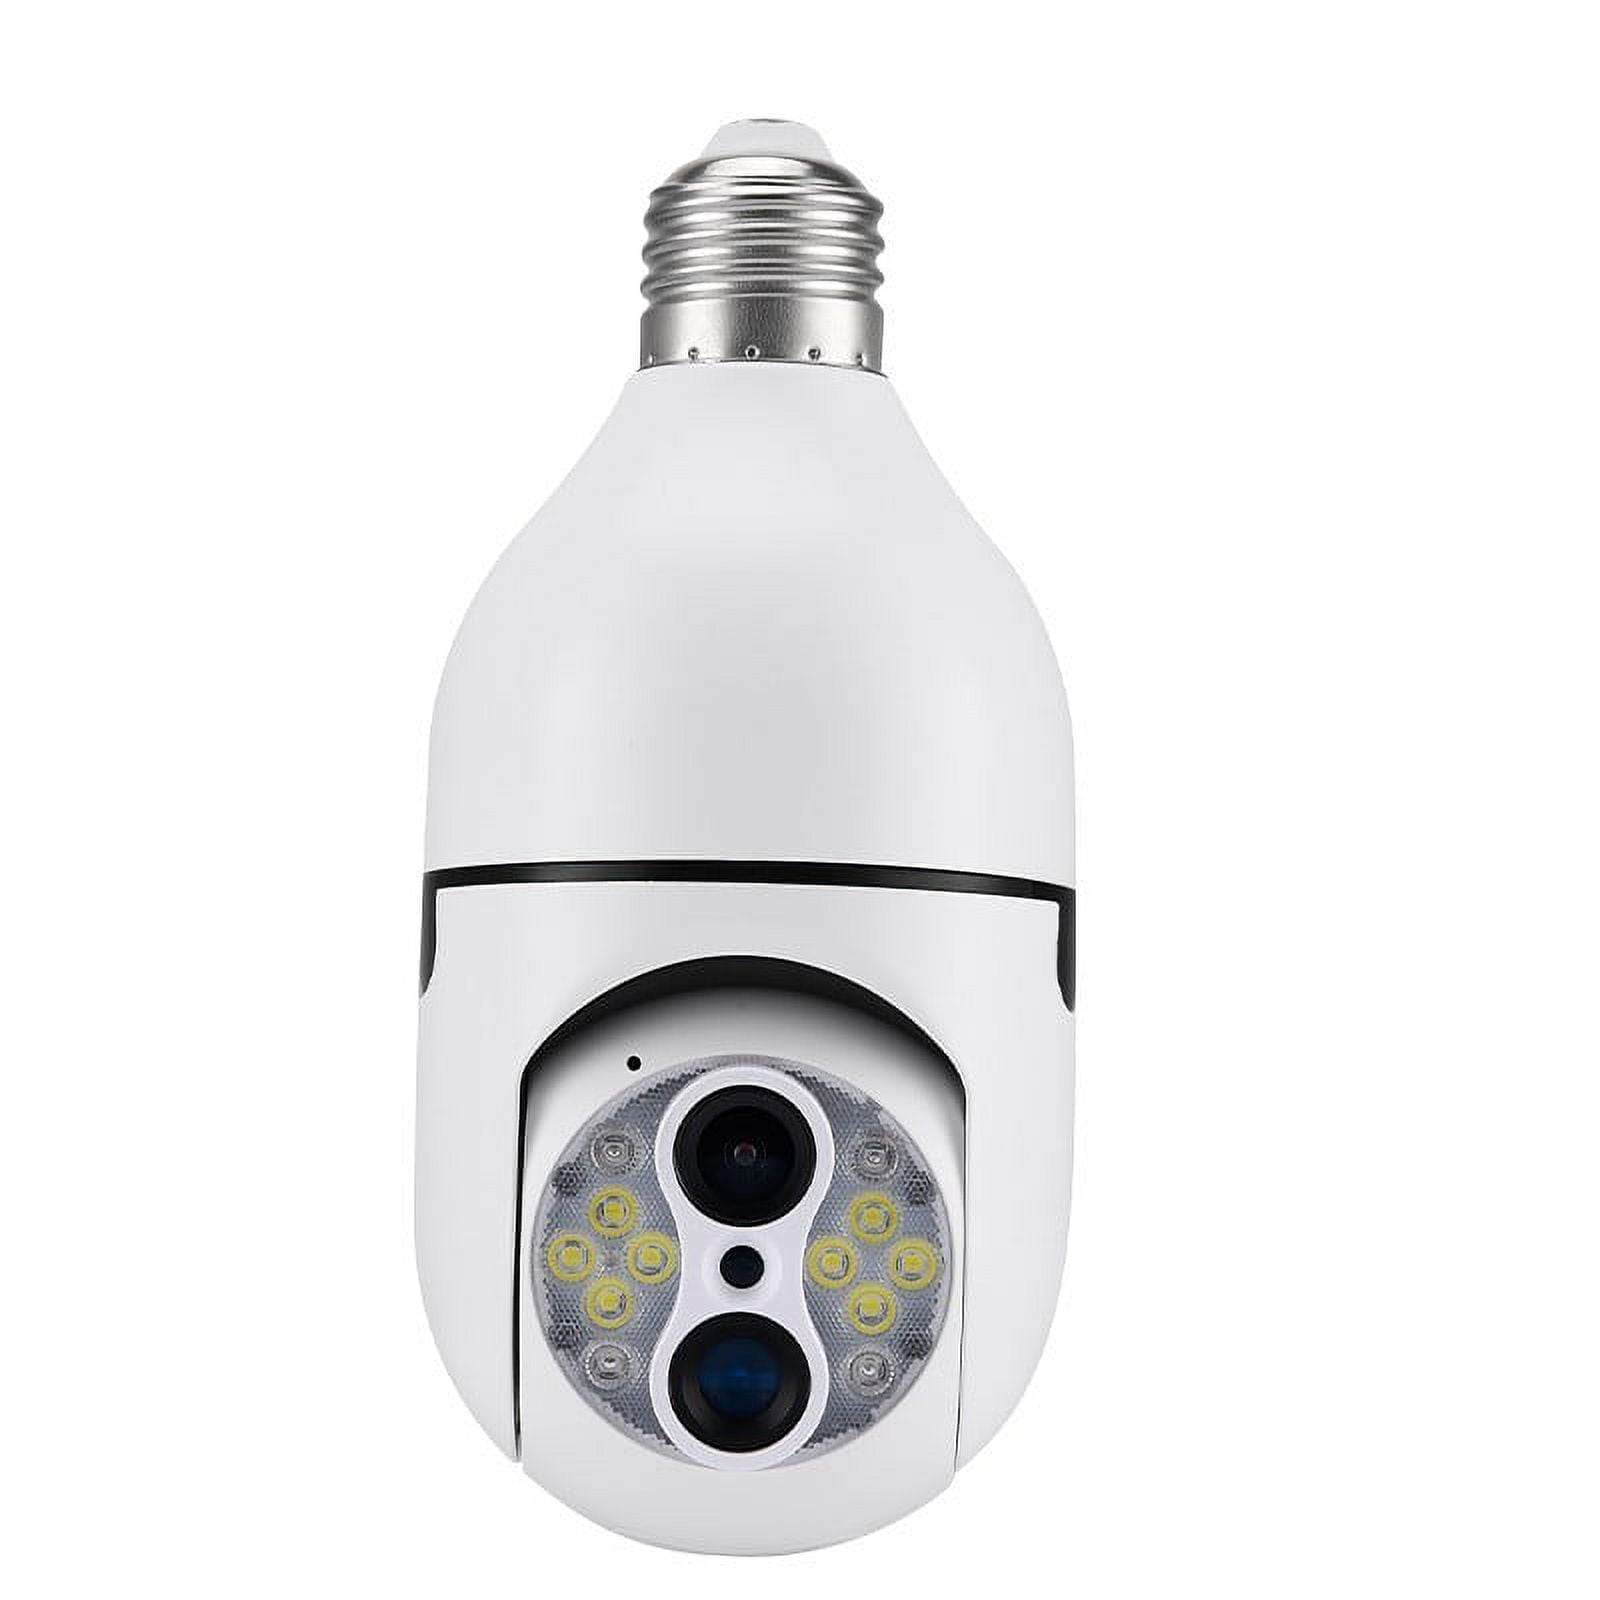 360° 1080P WiFi Dual Lens Security Camera 10X Hybrid Zoom E27 Light Bulb  Camera